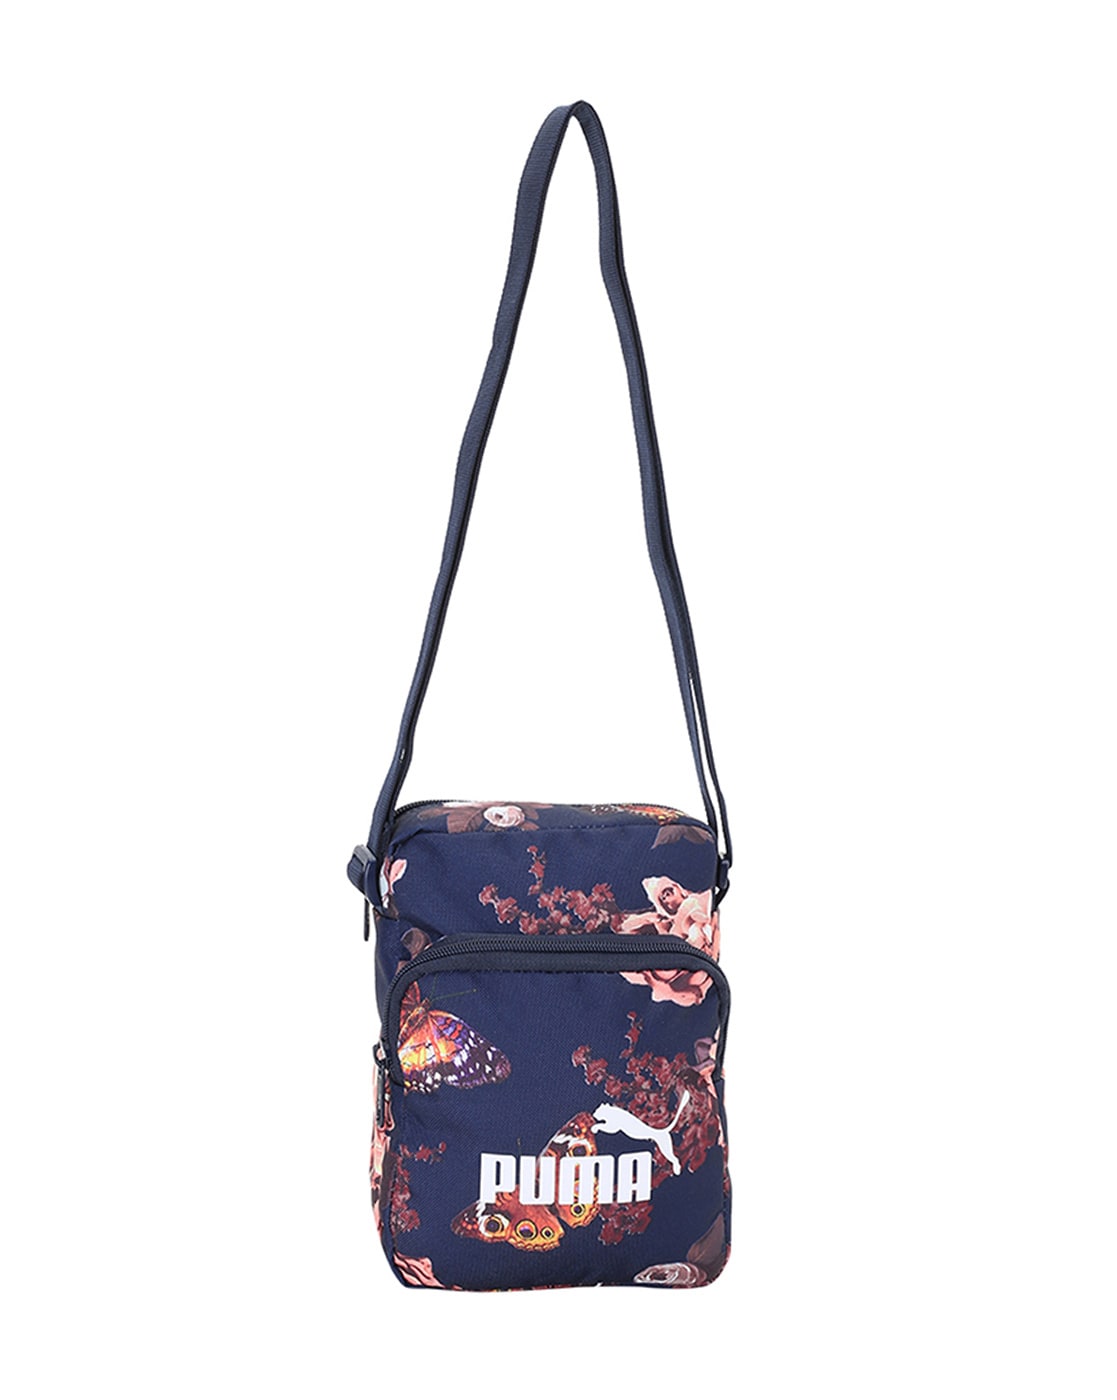 puma floral bag